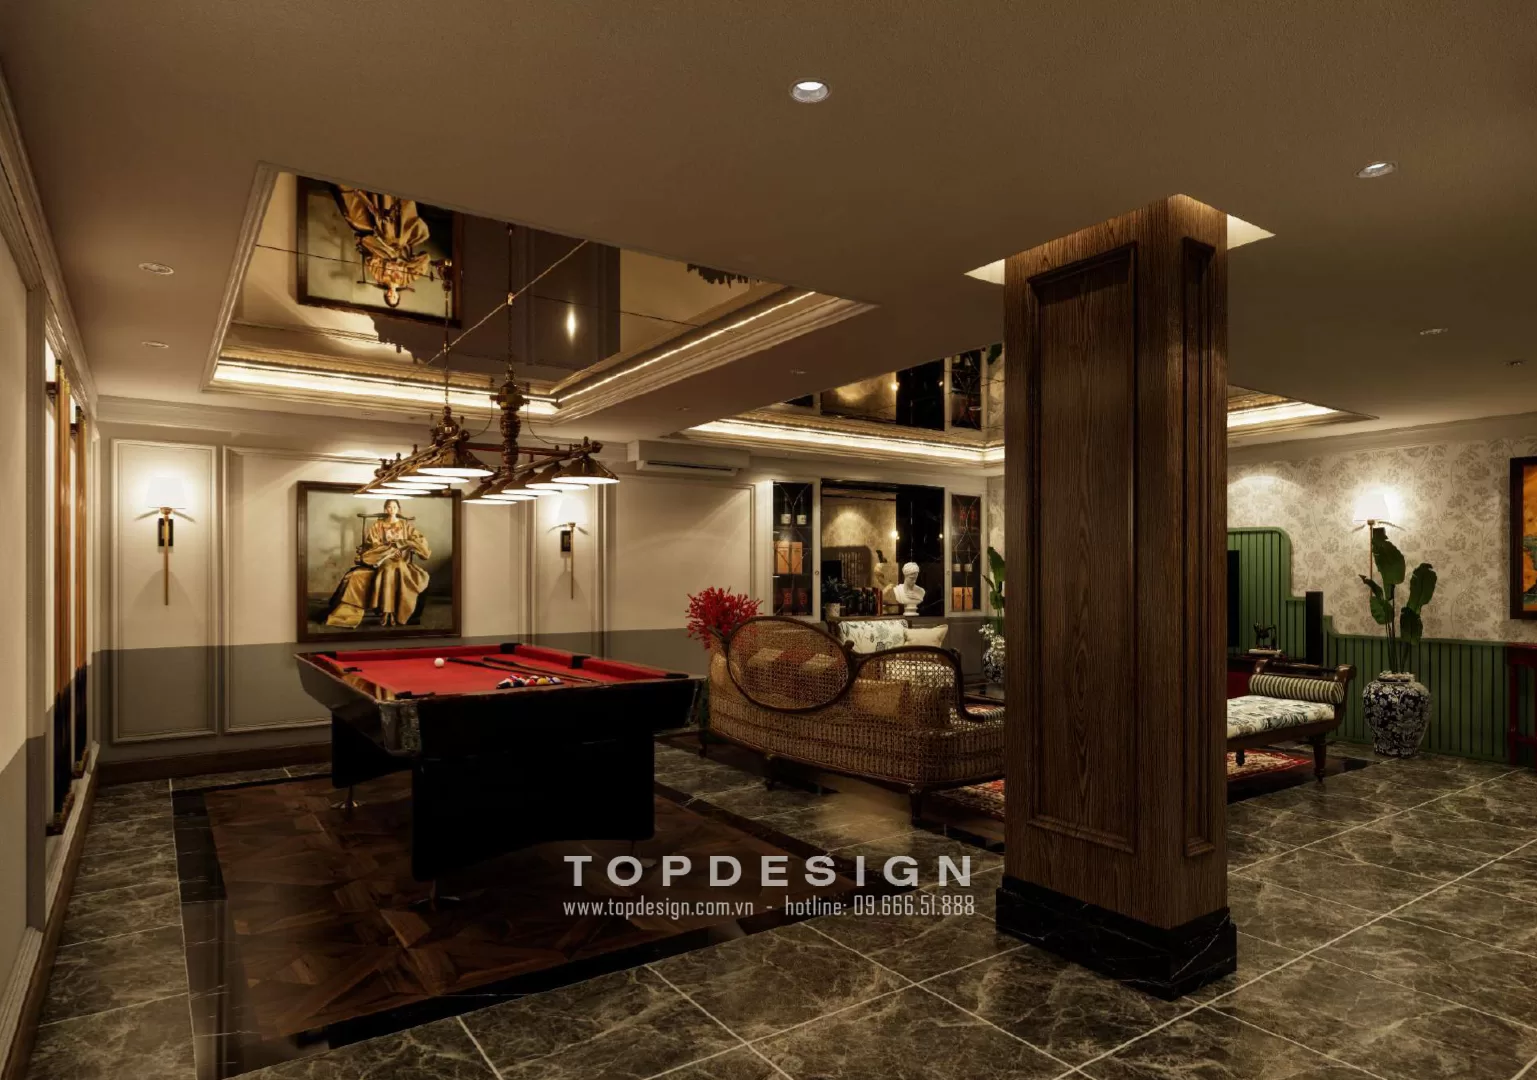 2. Thiết kế nội thất tầng hầm biệt thự sang trọng - TOPDESIGN- khu vực giải trí